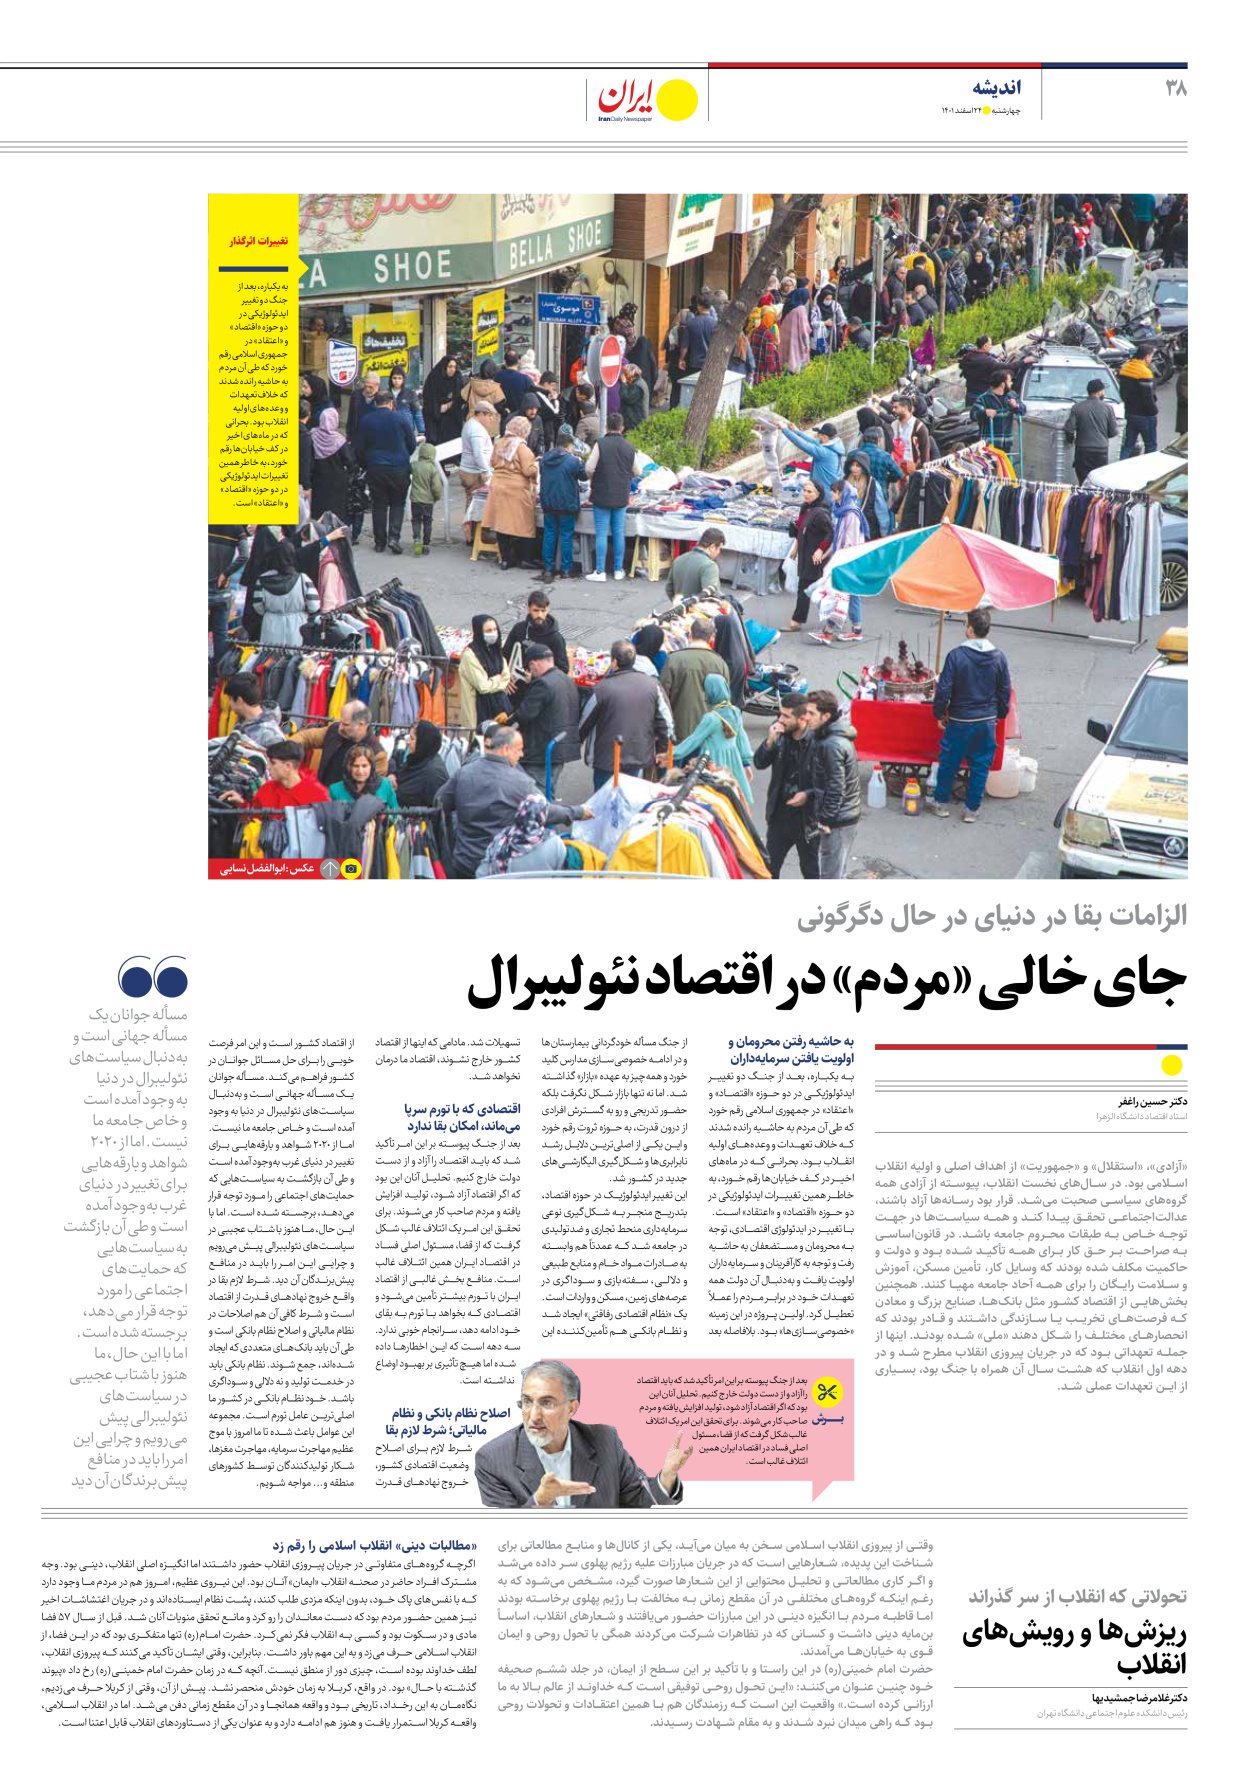 روزنامه ایران - ویژه نامه ویژه نوروز - ۲۴ اسفند ۱۴۰۱ - صفحه ۳۸